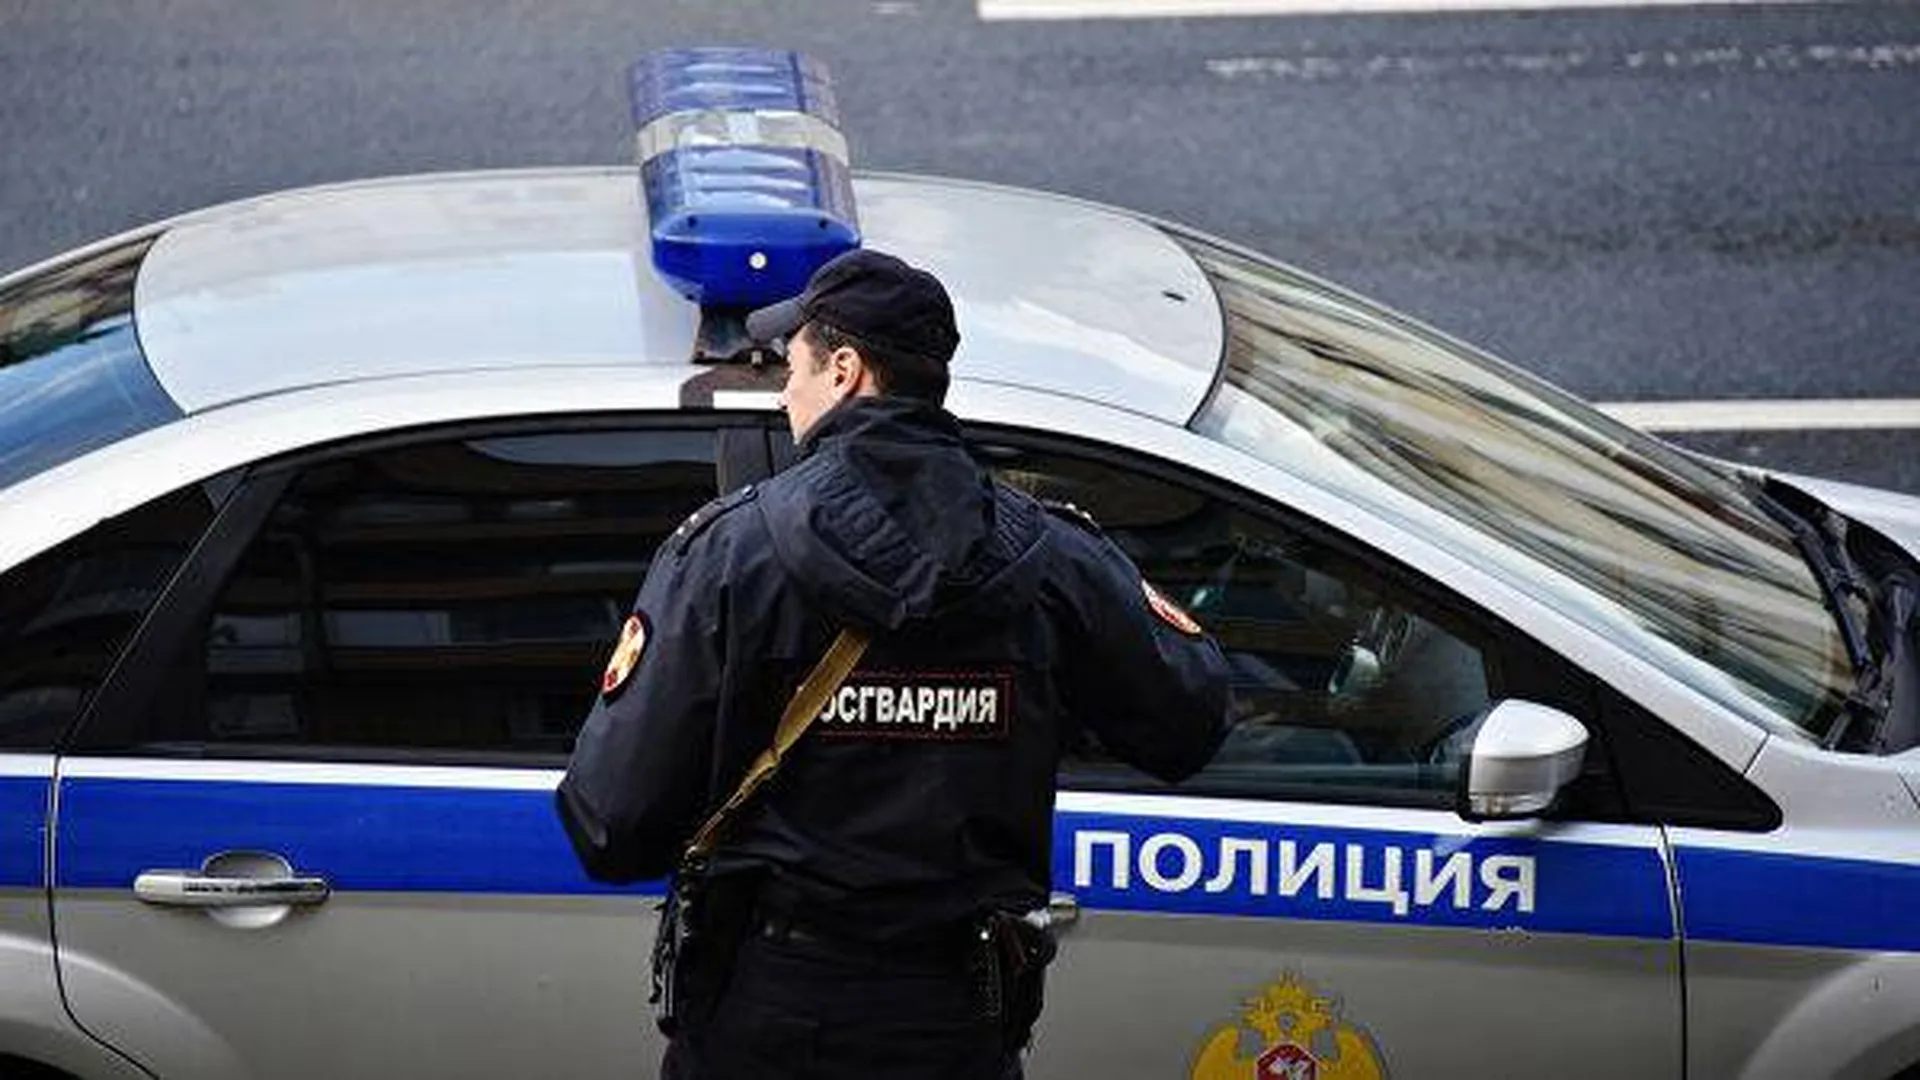 Дело о халатности полиции завели в Хакасии после гибели семьи из пяти человек